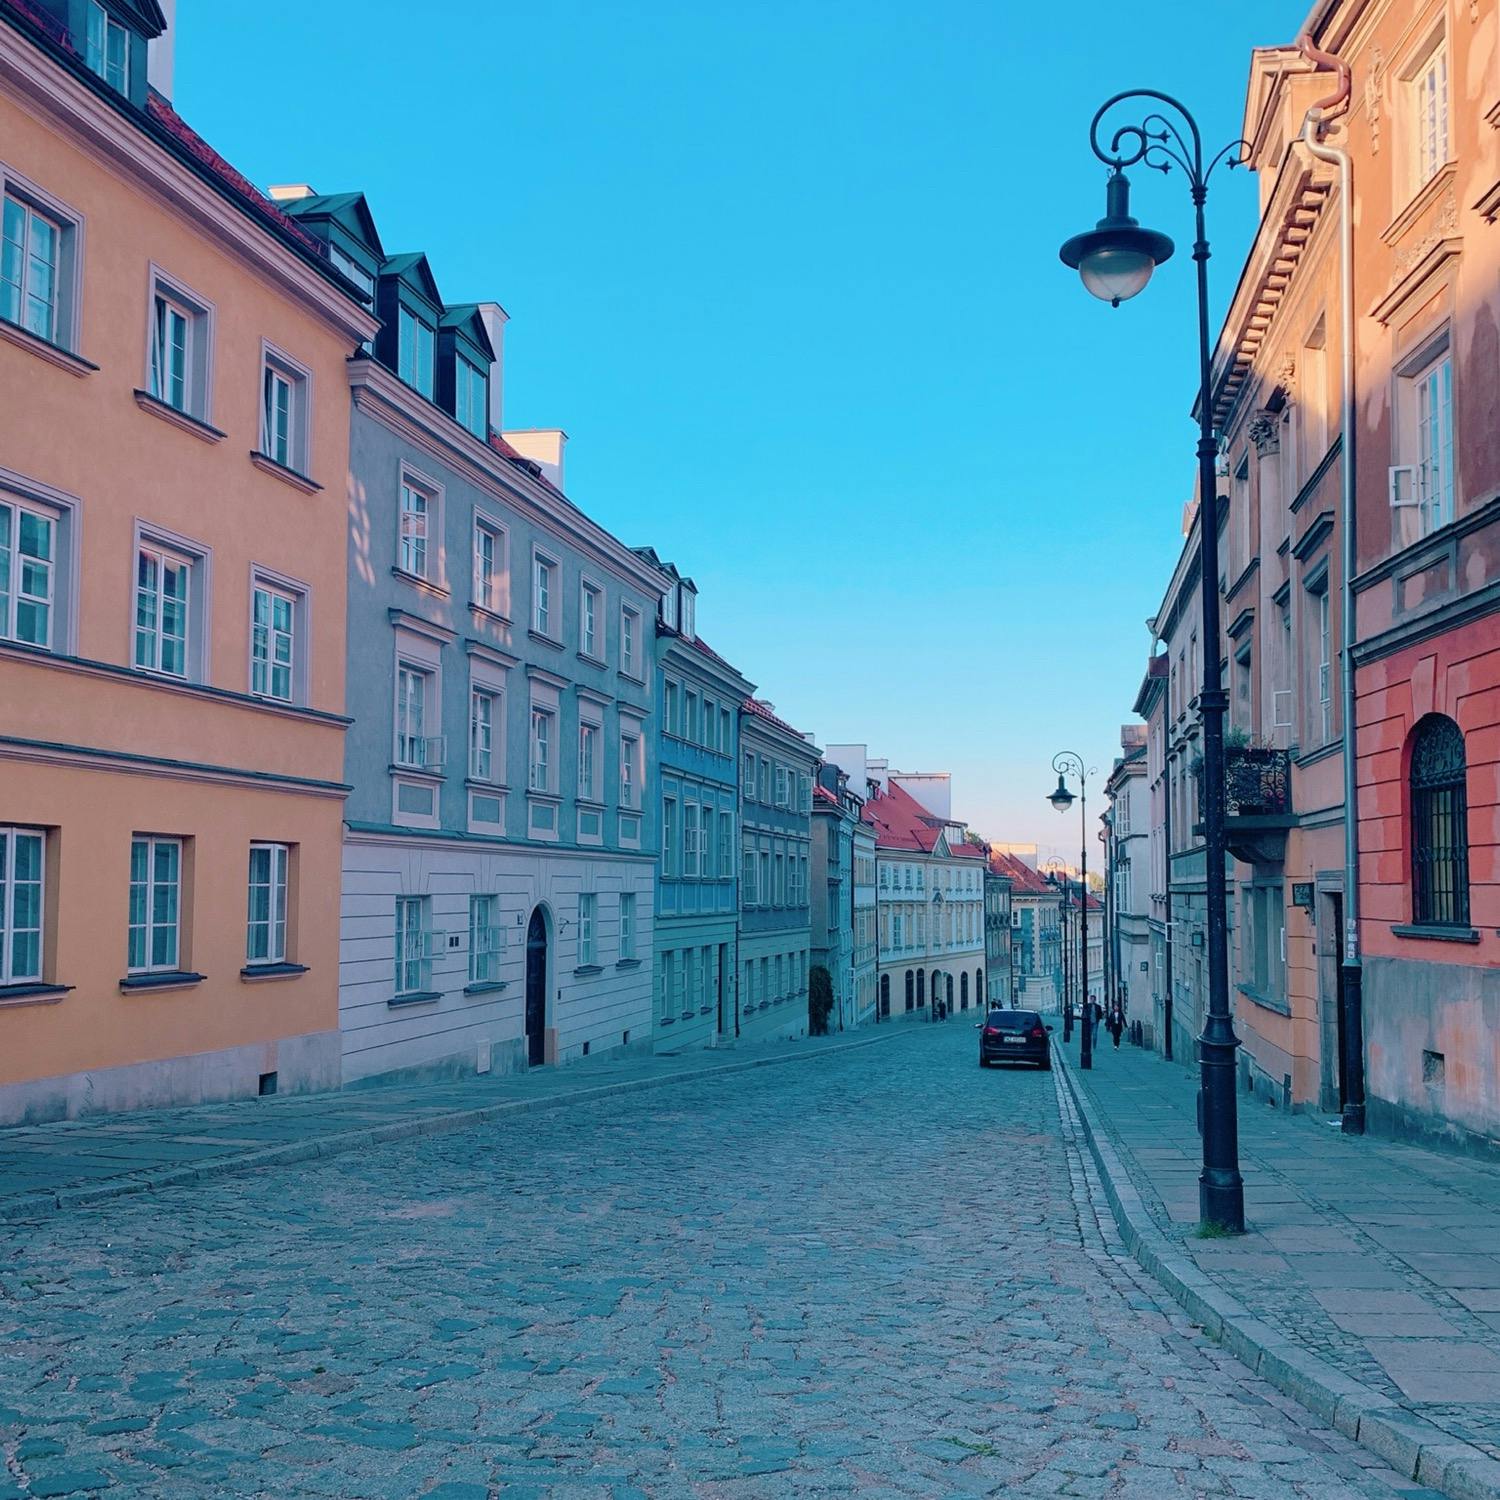 ワルシャワ旧市街 ワルシャワ歴史地区 の投稿写真 感想 みどころ ポーランド ワルシャワの街並み天気が良くとても綺麗でした トリップノート